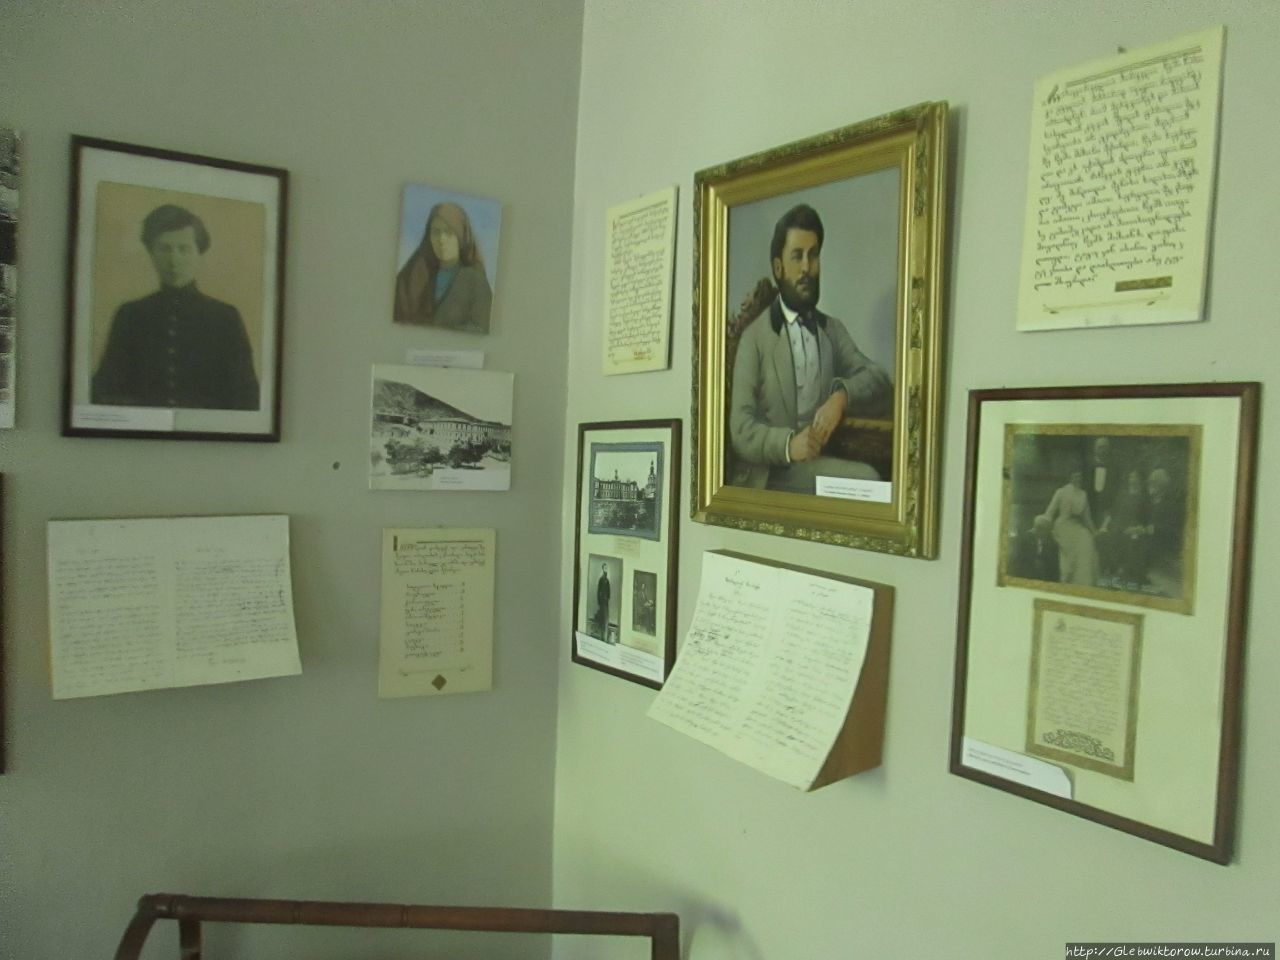 Редкий музей на Военно-Грузинской дороге Степанцминда, Грузия